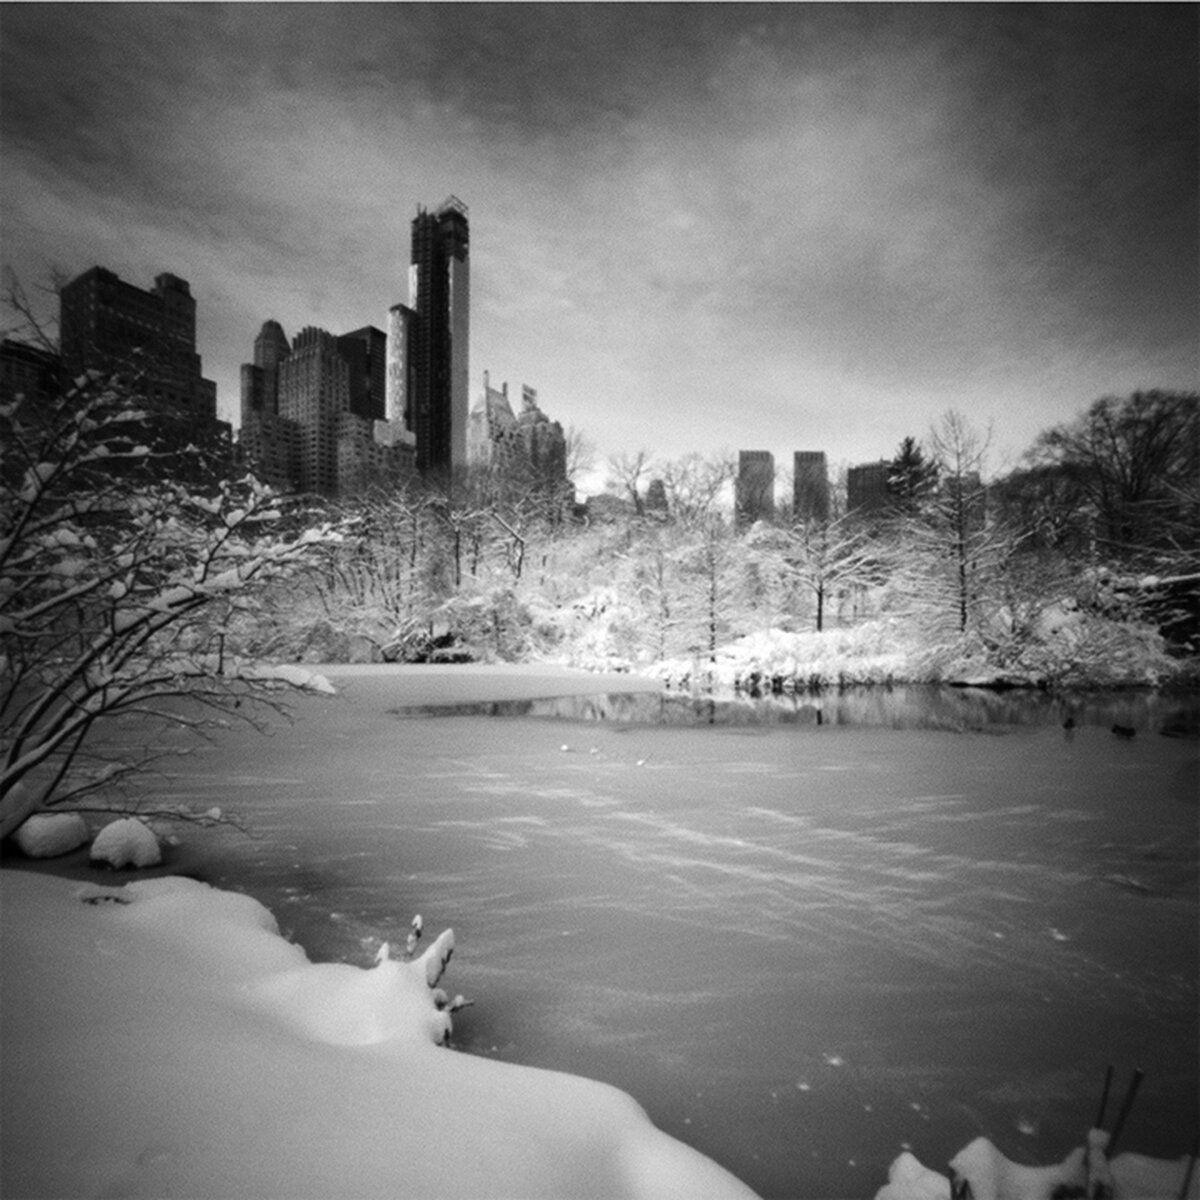   Central Park Snow 1 , 2014 